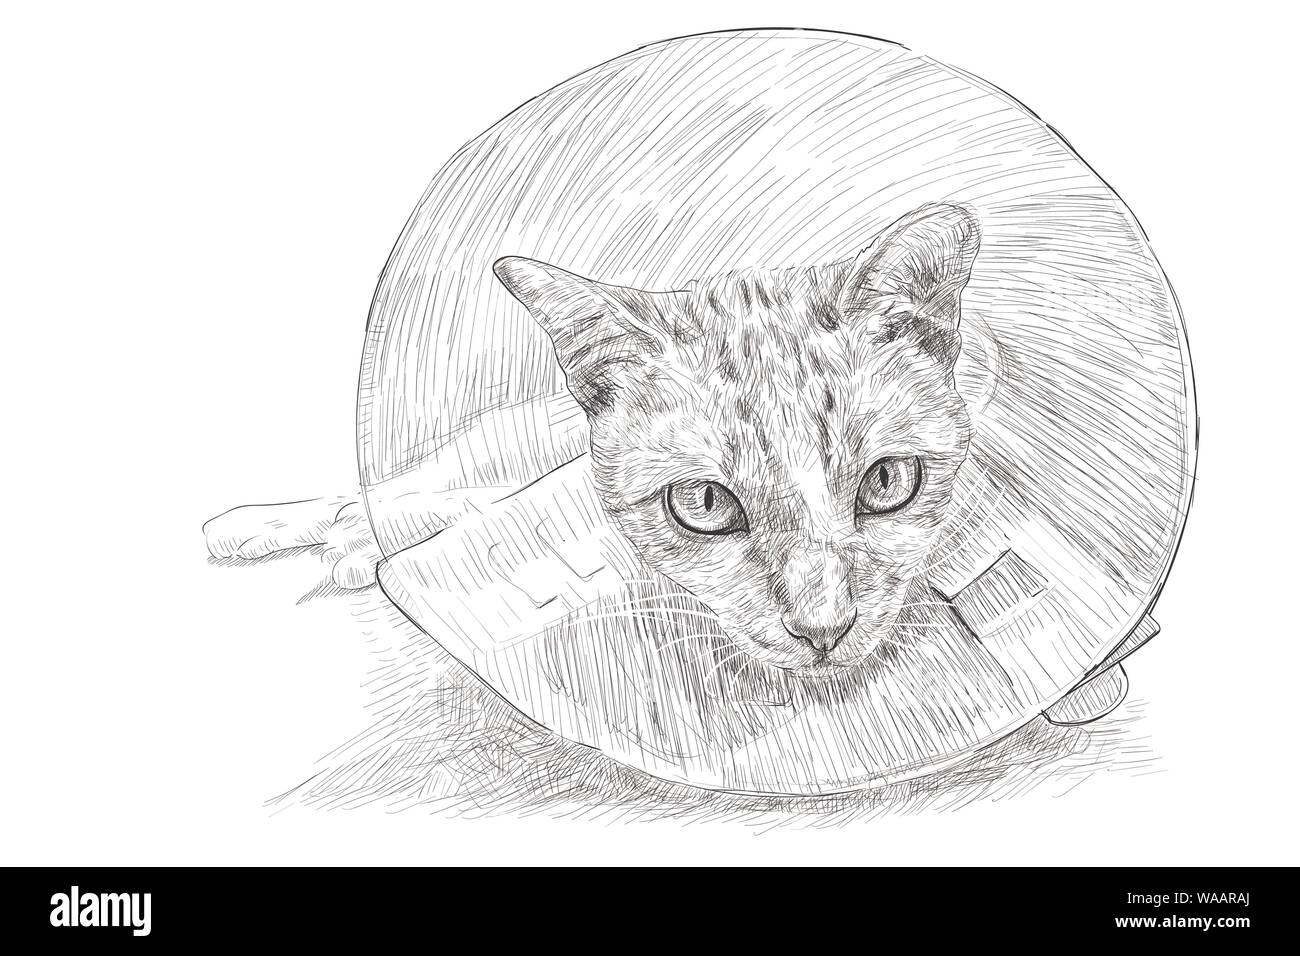 Disegno di un gatto con indosso un collare Elizabethan evitare graffi e morsi di feriti, maglie, eruzioni cutanee e ferite dopo la sterilizzazione. Illustratio vettore Illustrazione Vettoriale